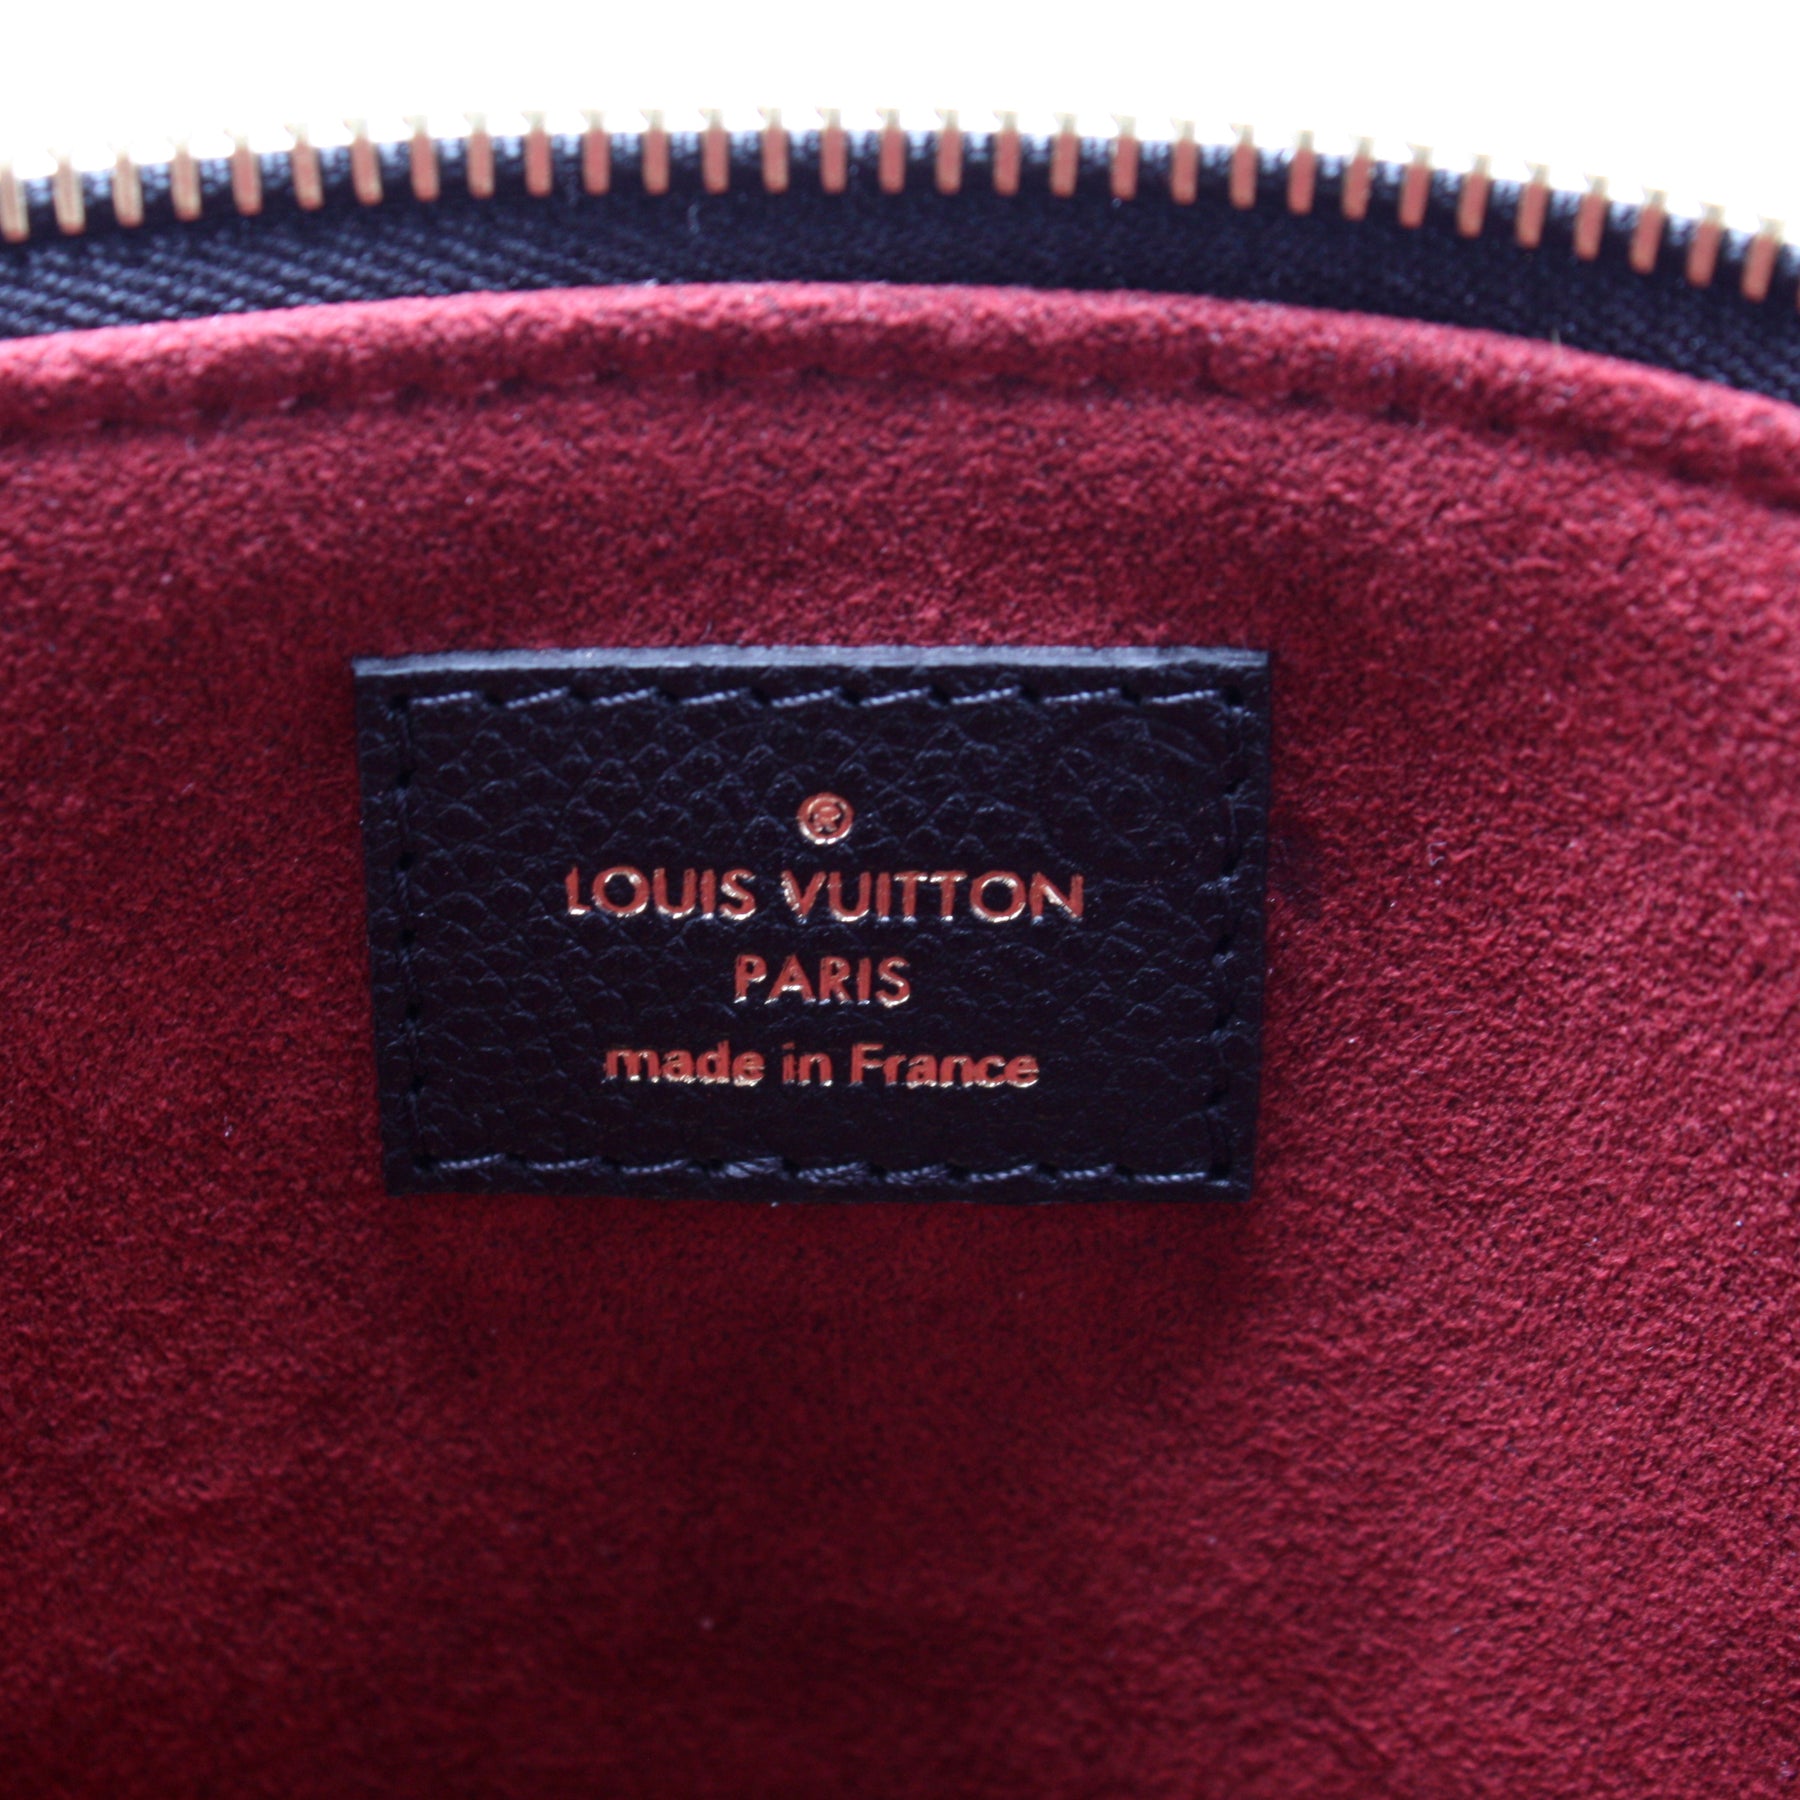 Lot - A handbag marked Louis Vuitton (Petit Palais) with pink